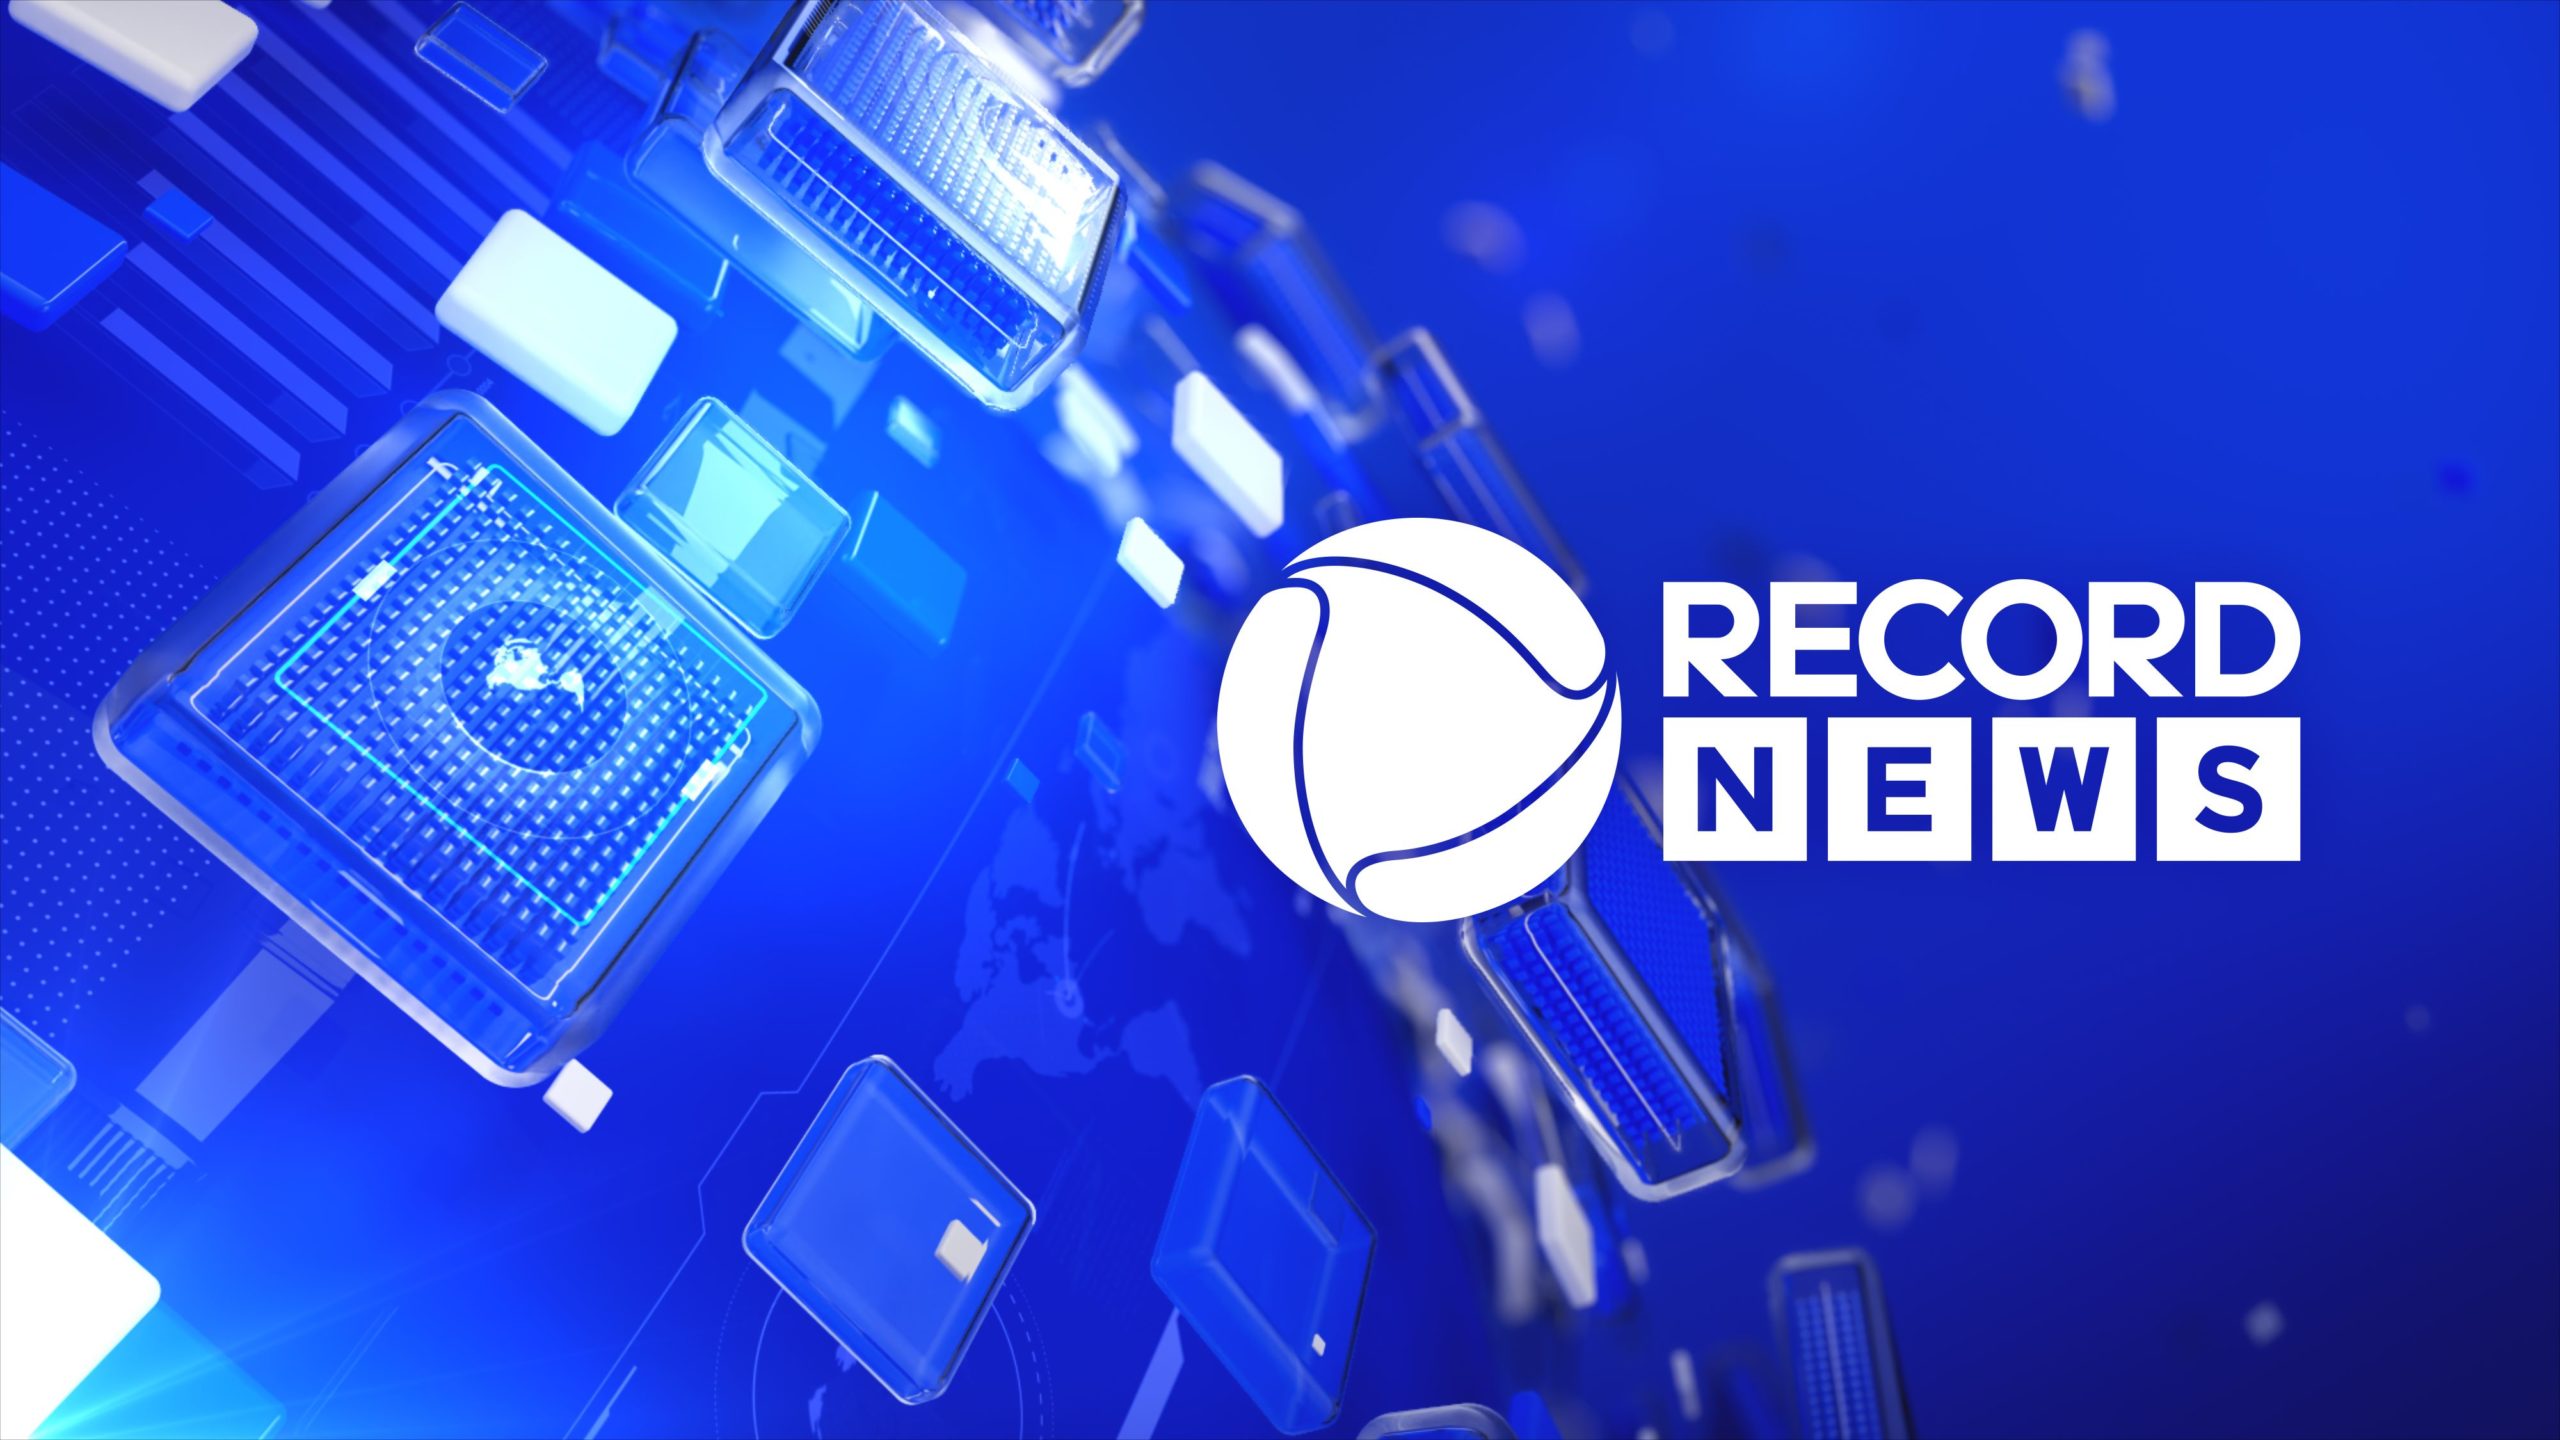 Record News celebra 15 anos com nova marca